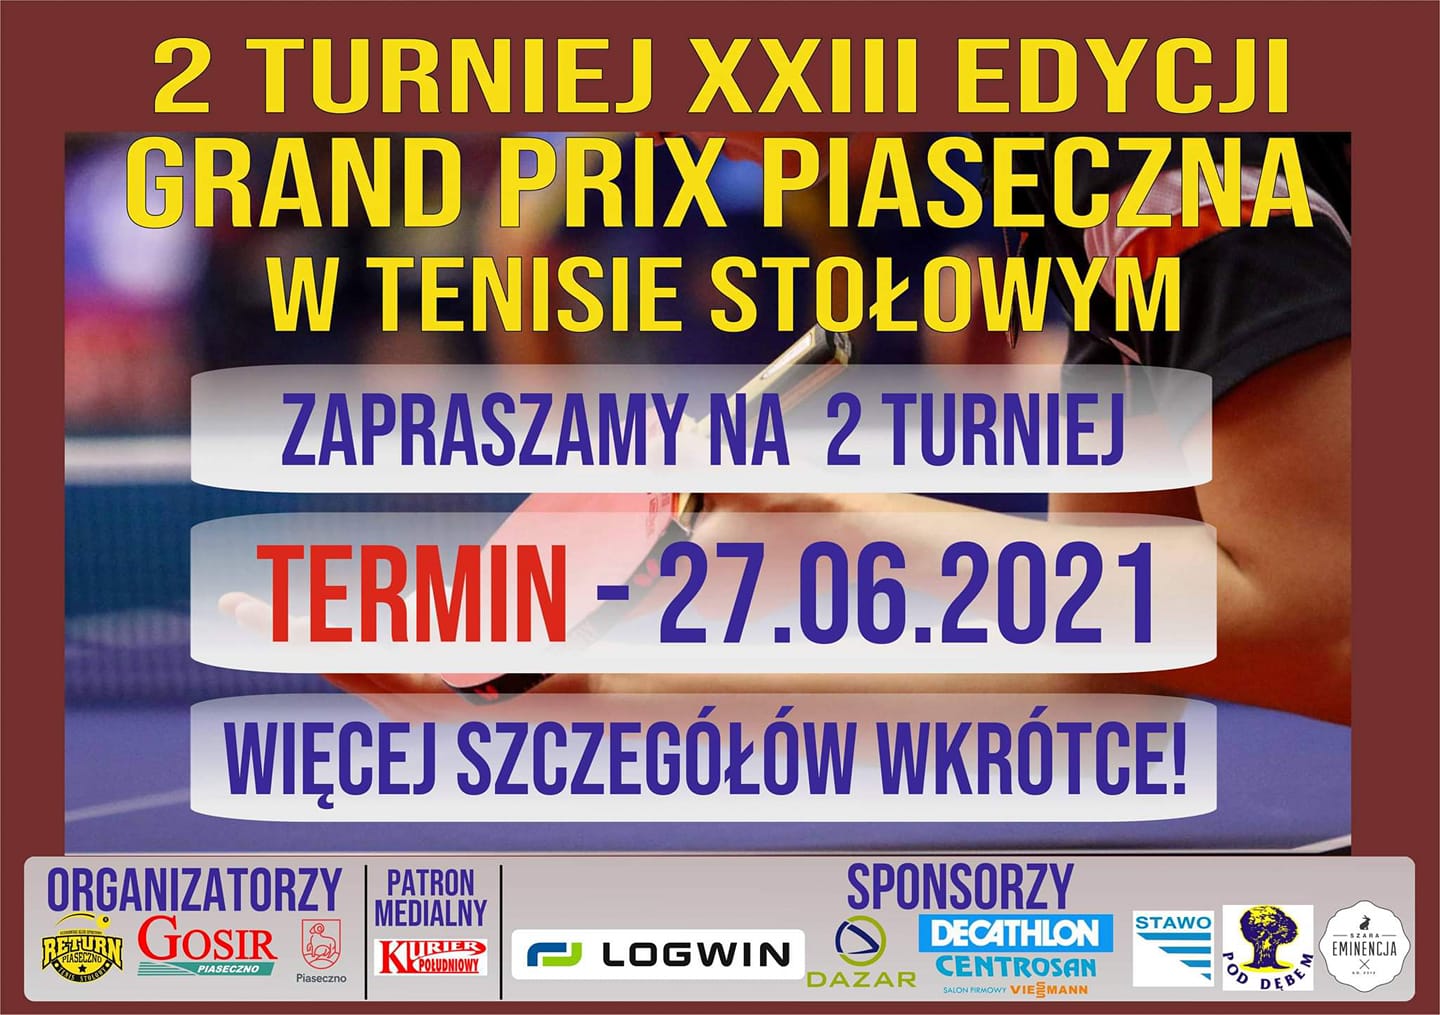 Plakat turnieju 2 turniej XXIII edycji Grand Prix Piaseczna w Tenisie Stołowym